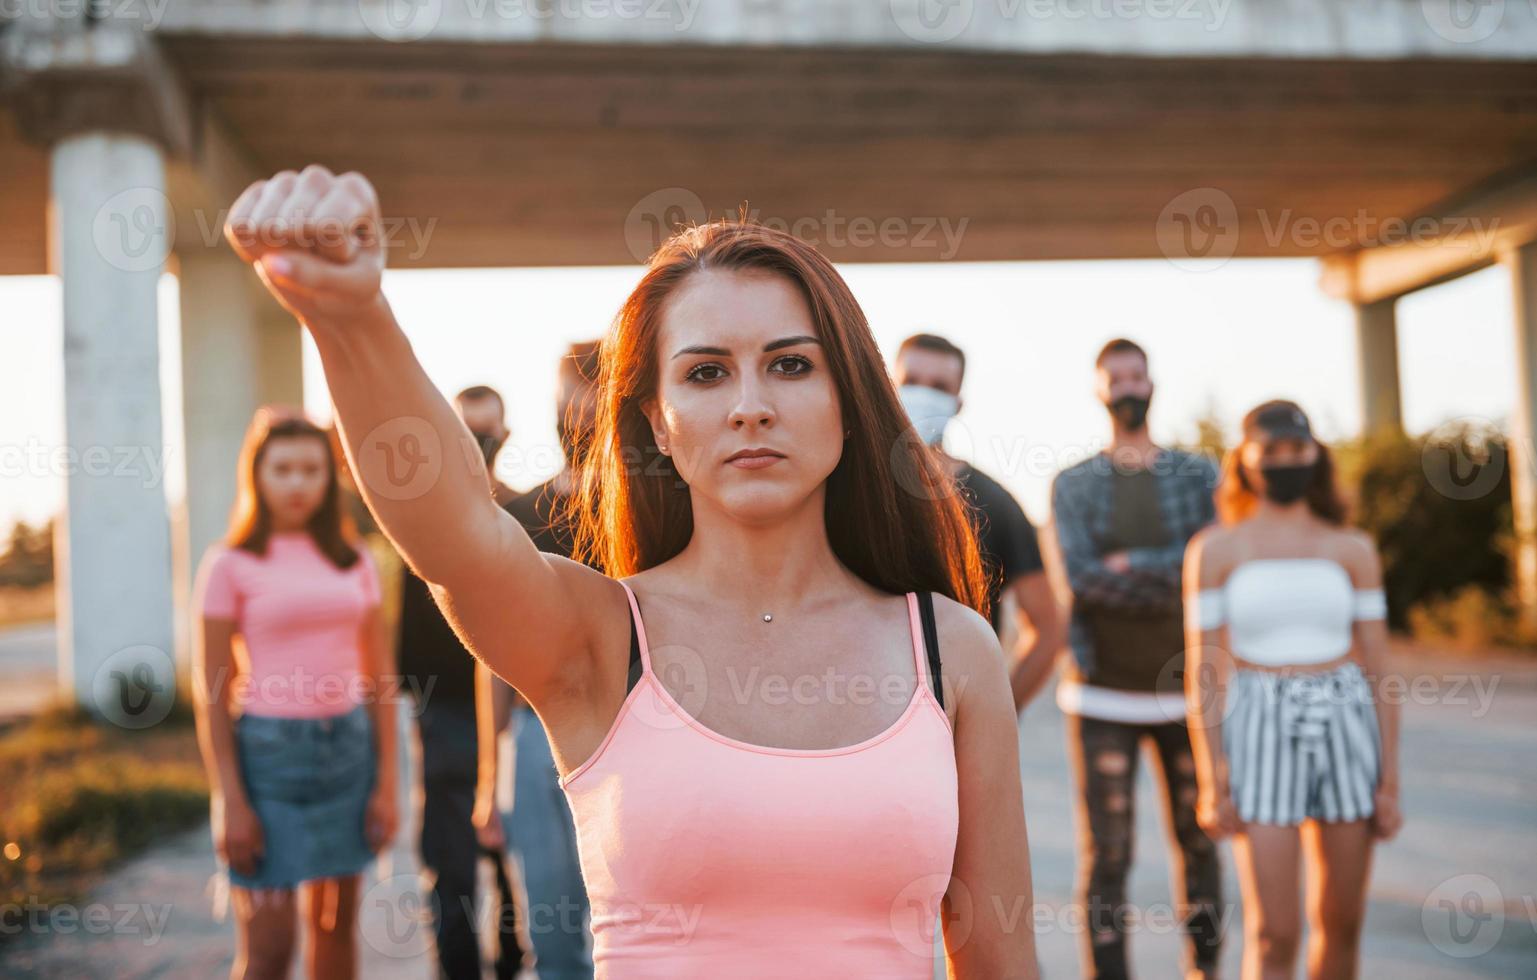 Frau an der Vorderseite der Menge. Gruppe protestierender junger Menschen, die zusammenstehen. Aktivist für Menschenrechte oder gegen die Regierung foto